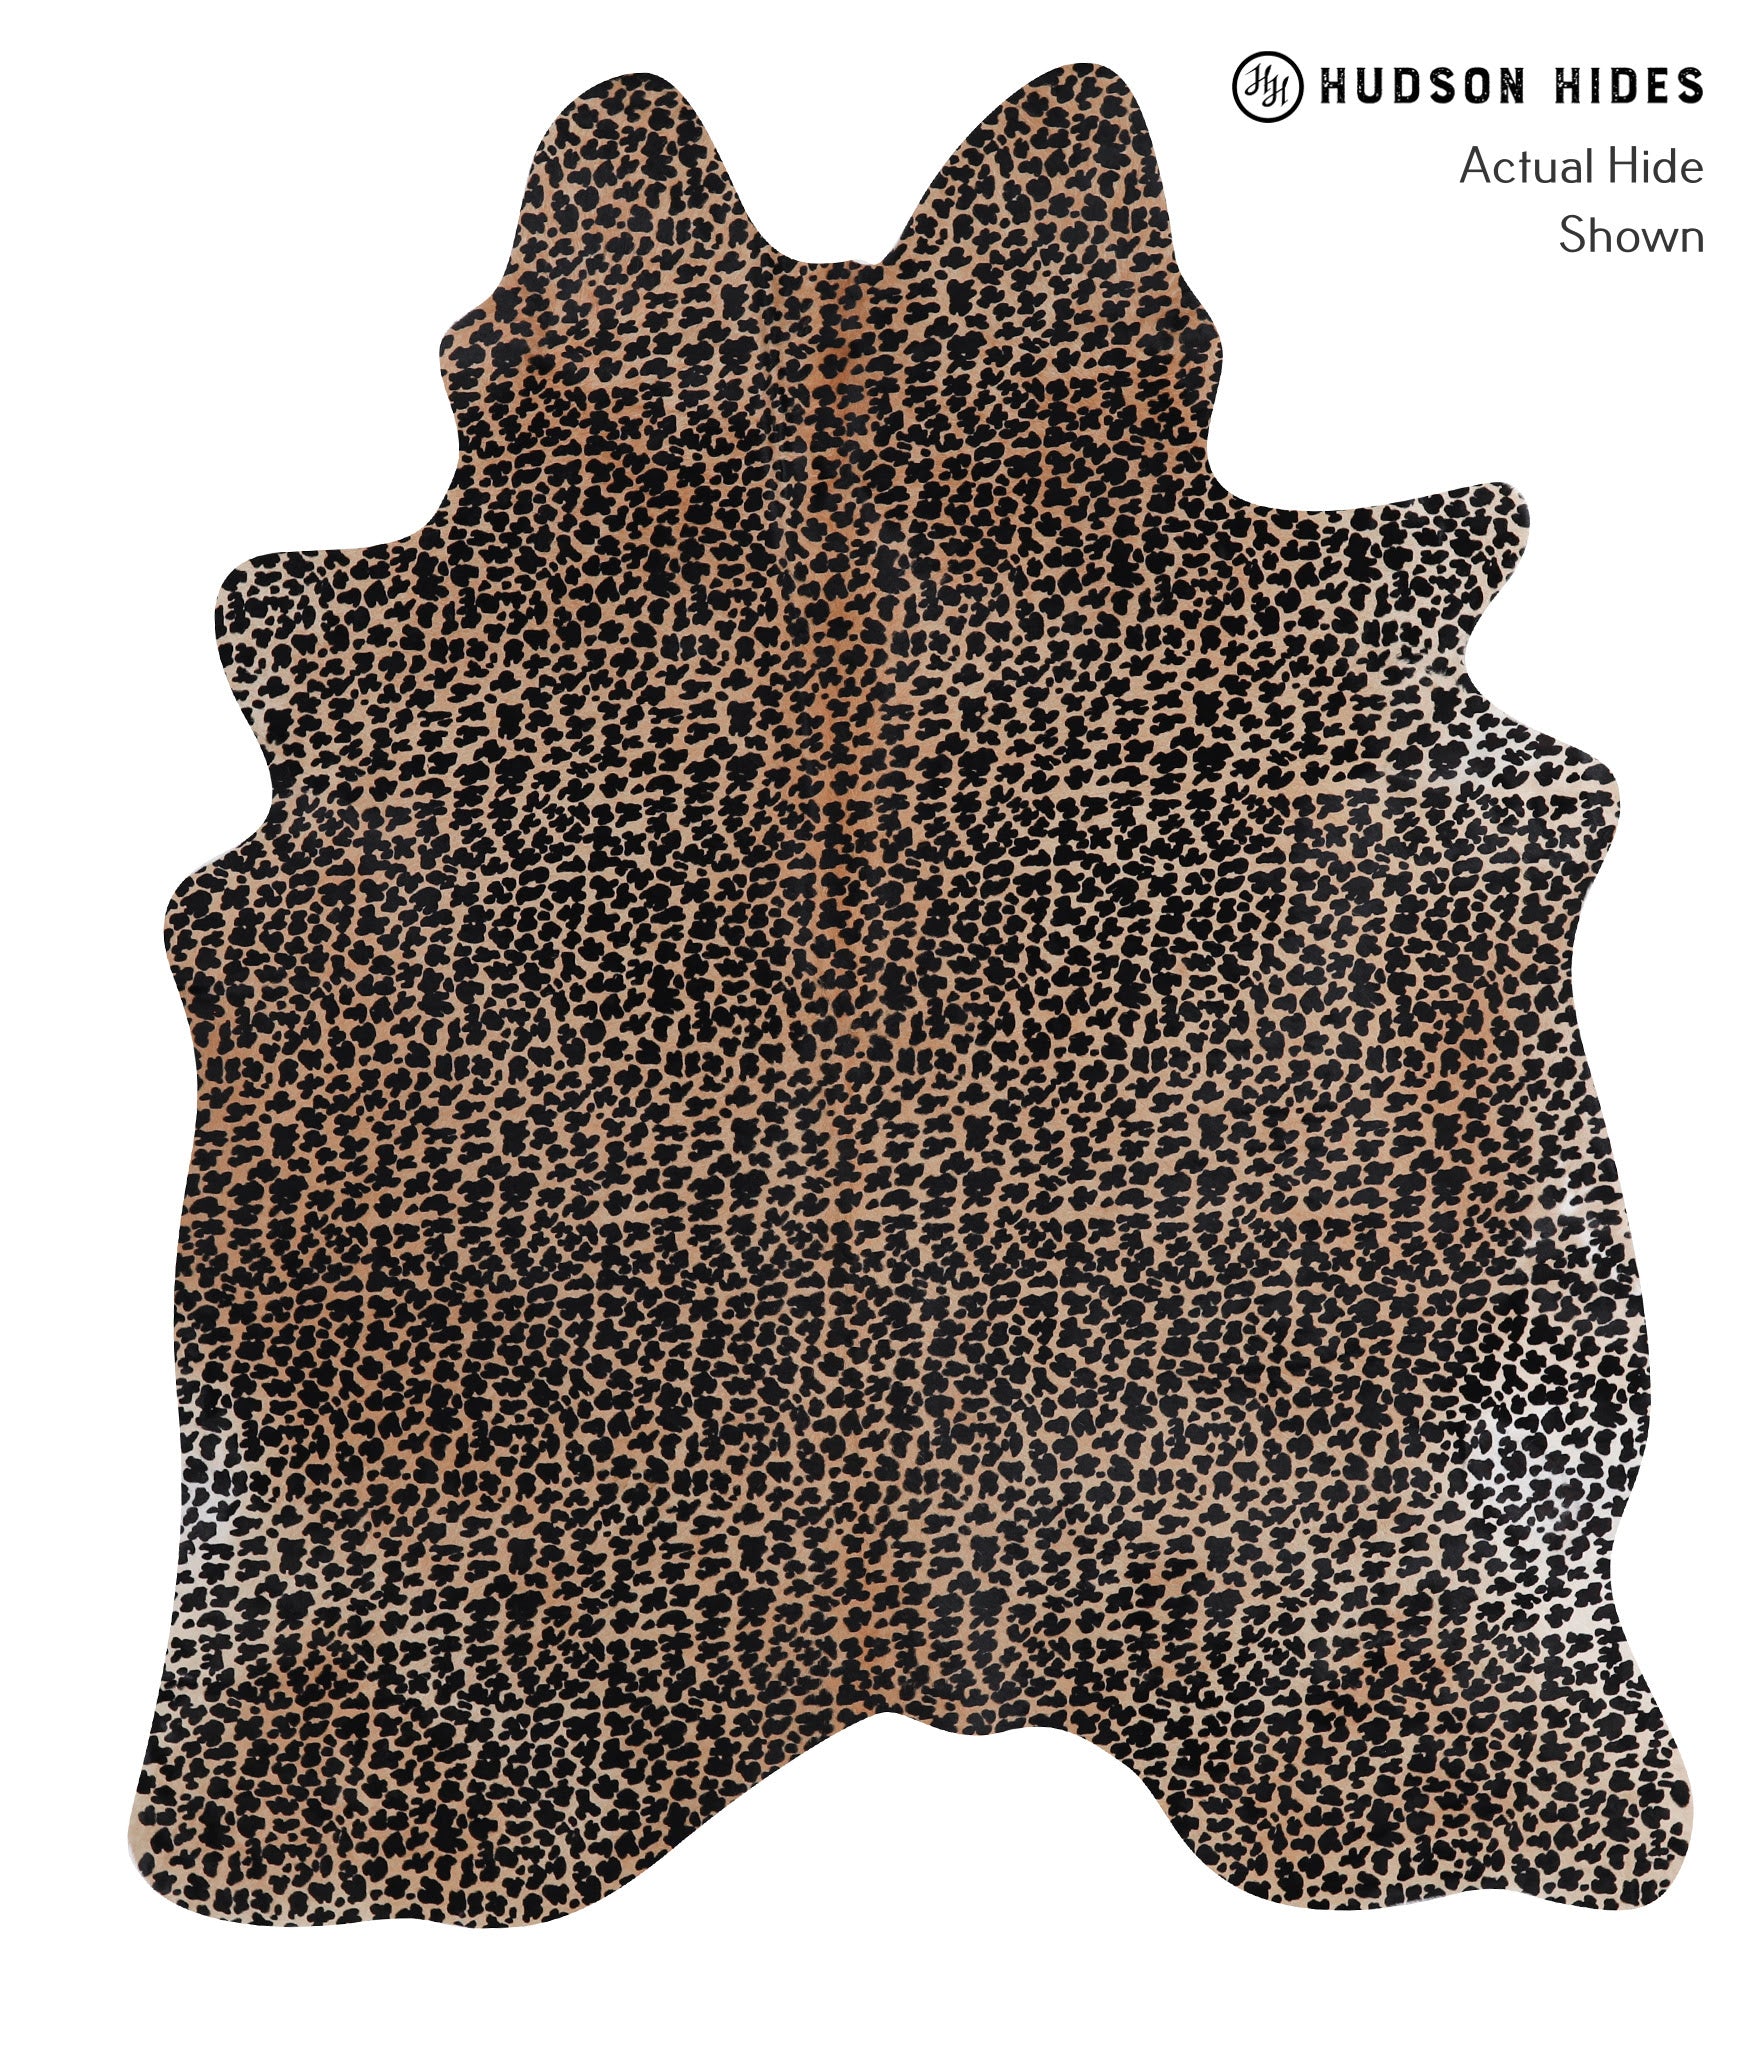 Animal Print Cowhide Rug #A12829